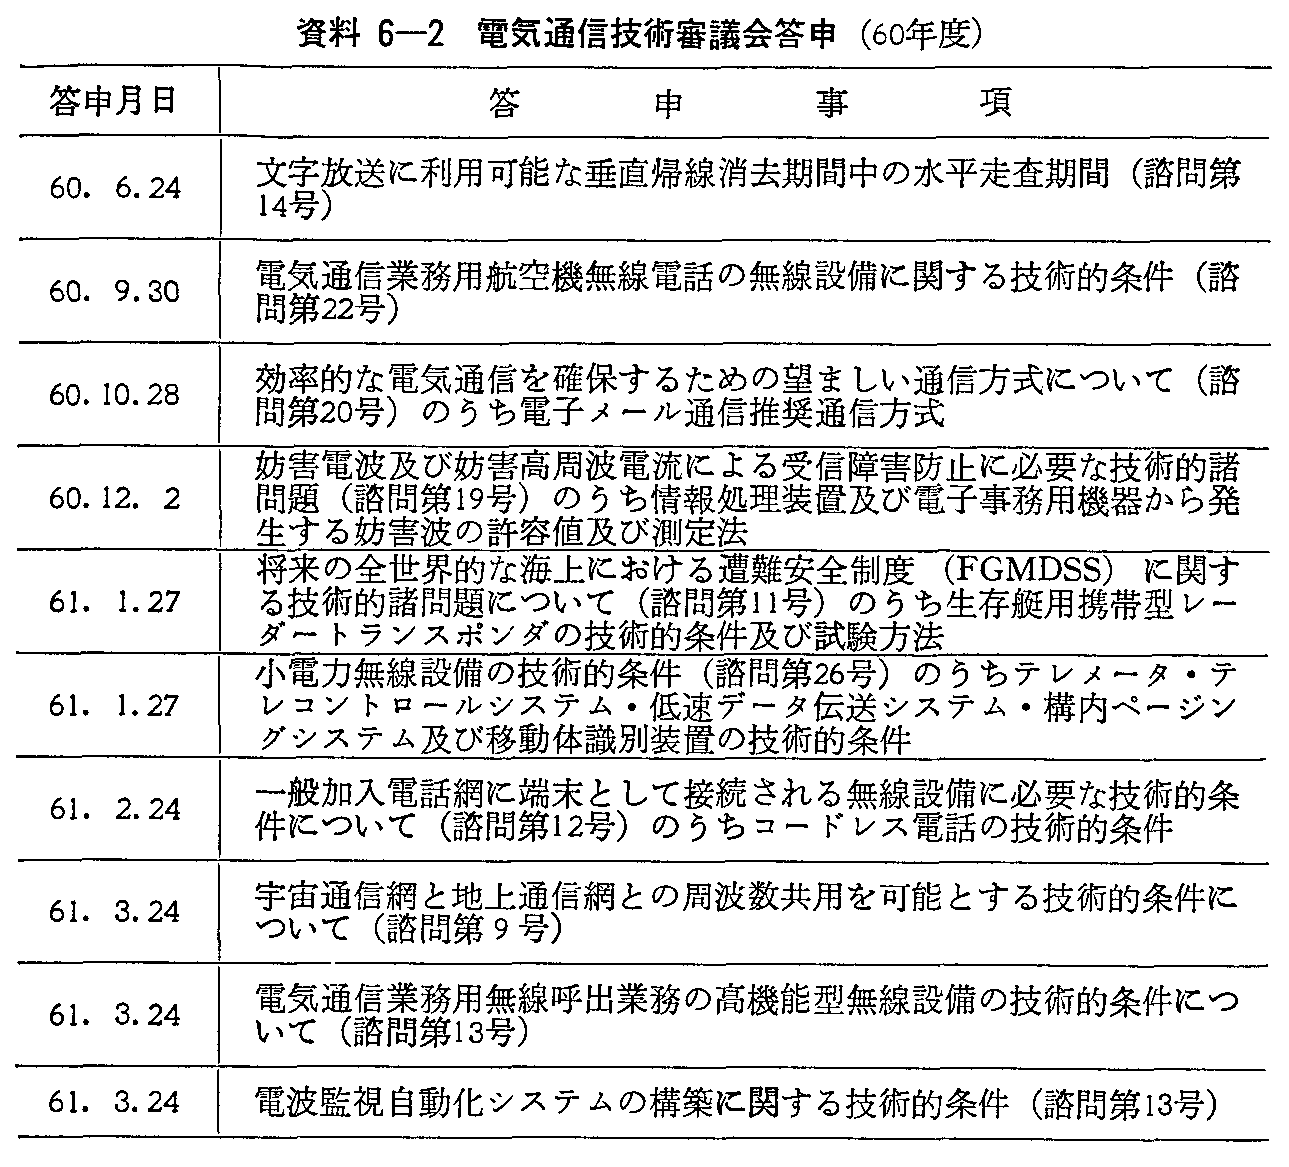 資料6-2 電気通信技術審議会答申(60年度)